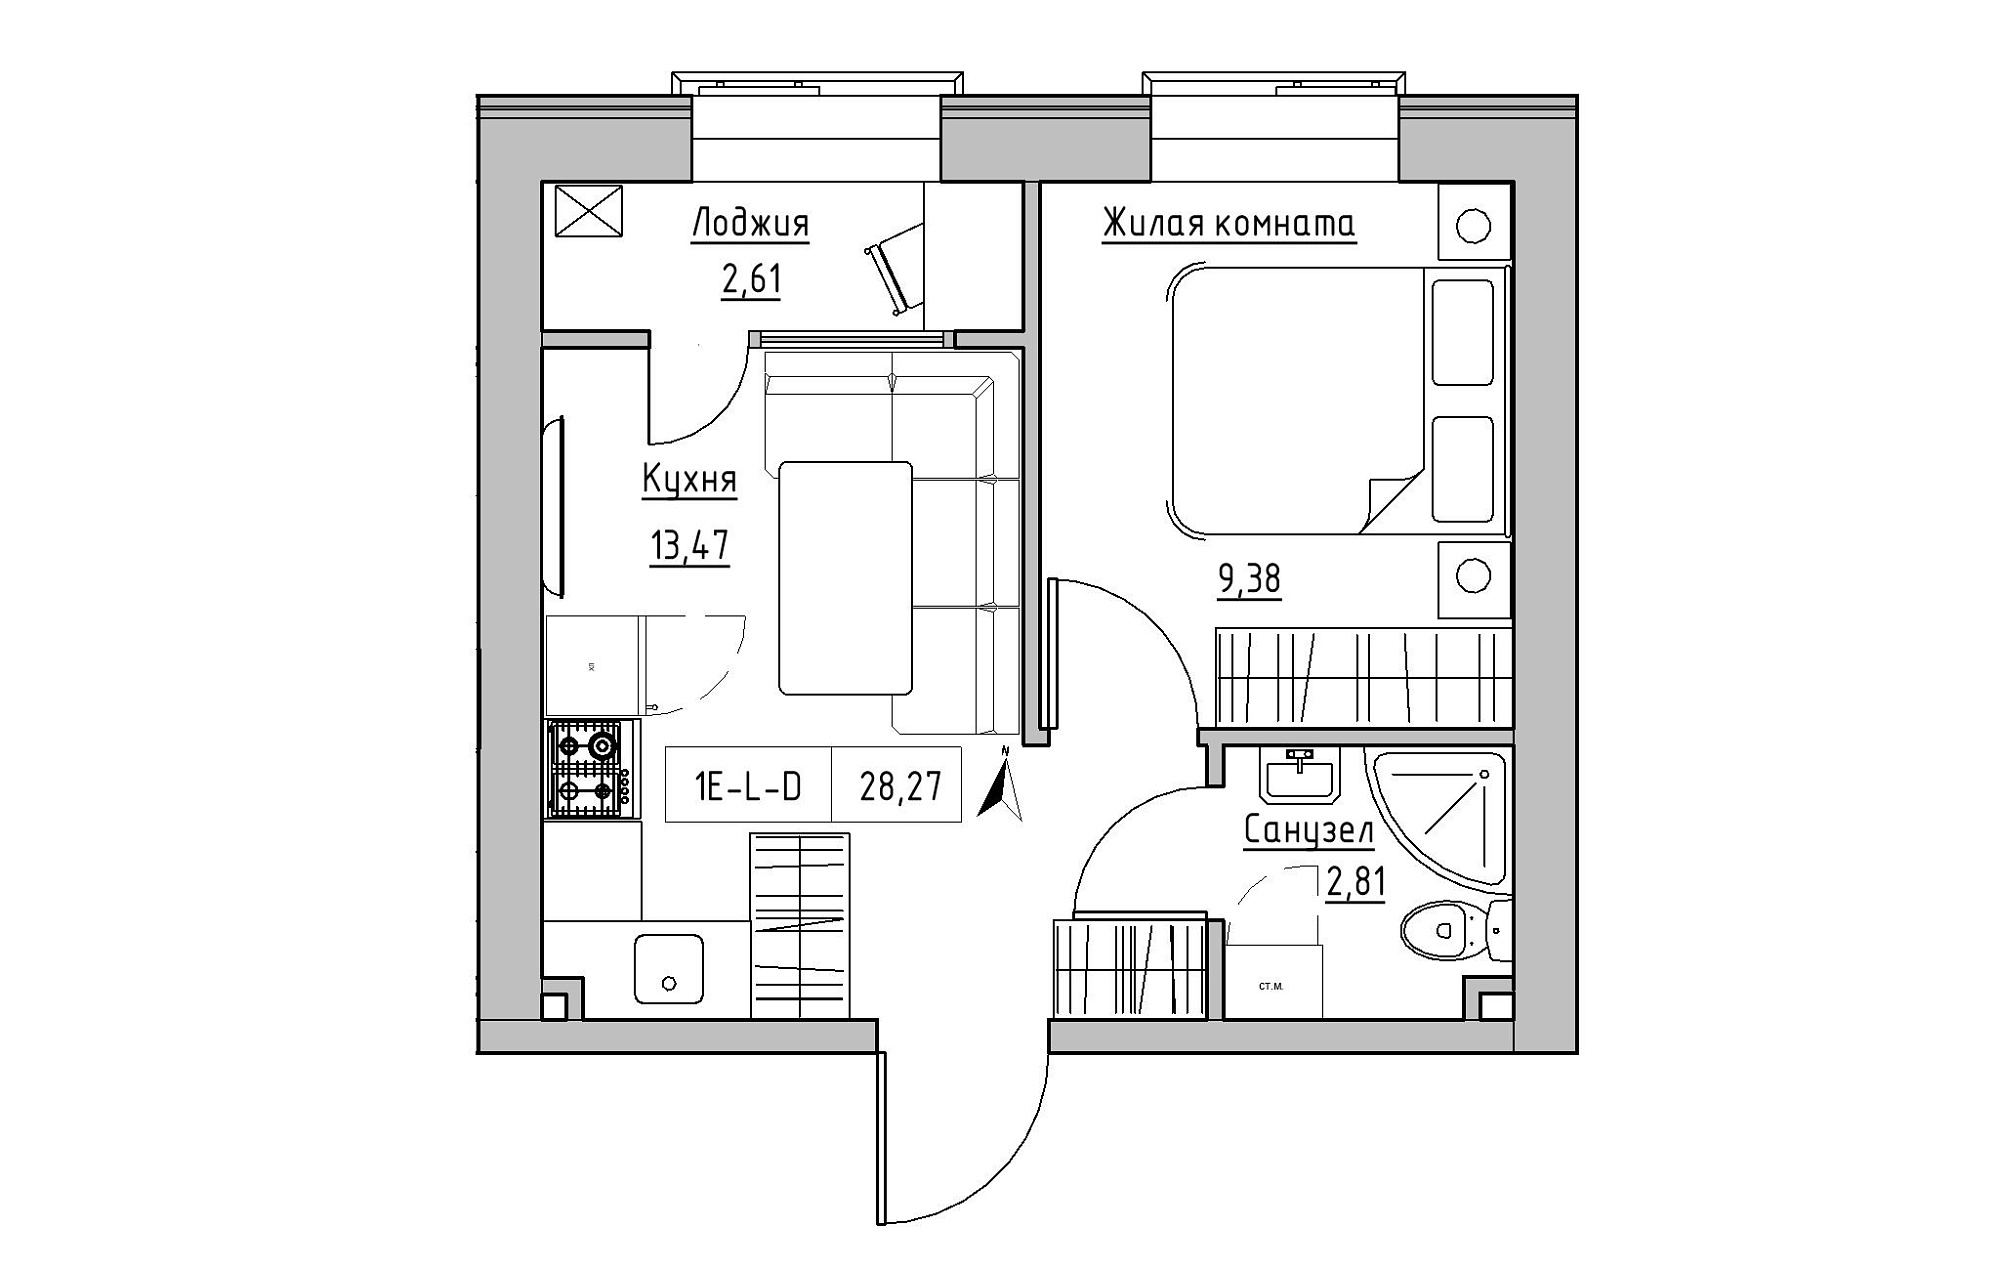 Планування 1-к квартира площею 28.27м2, KS-019-02/0015.